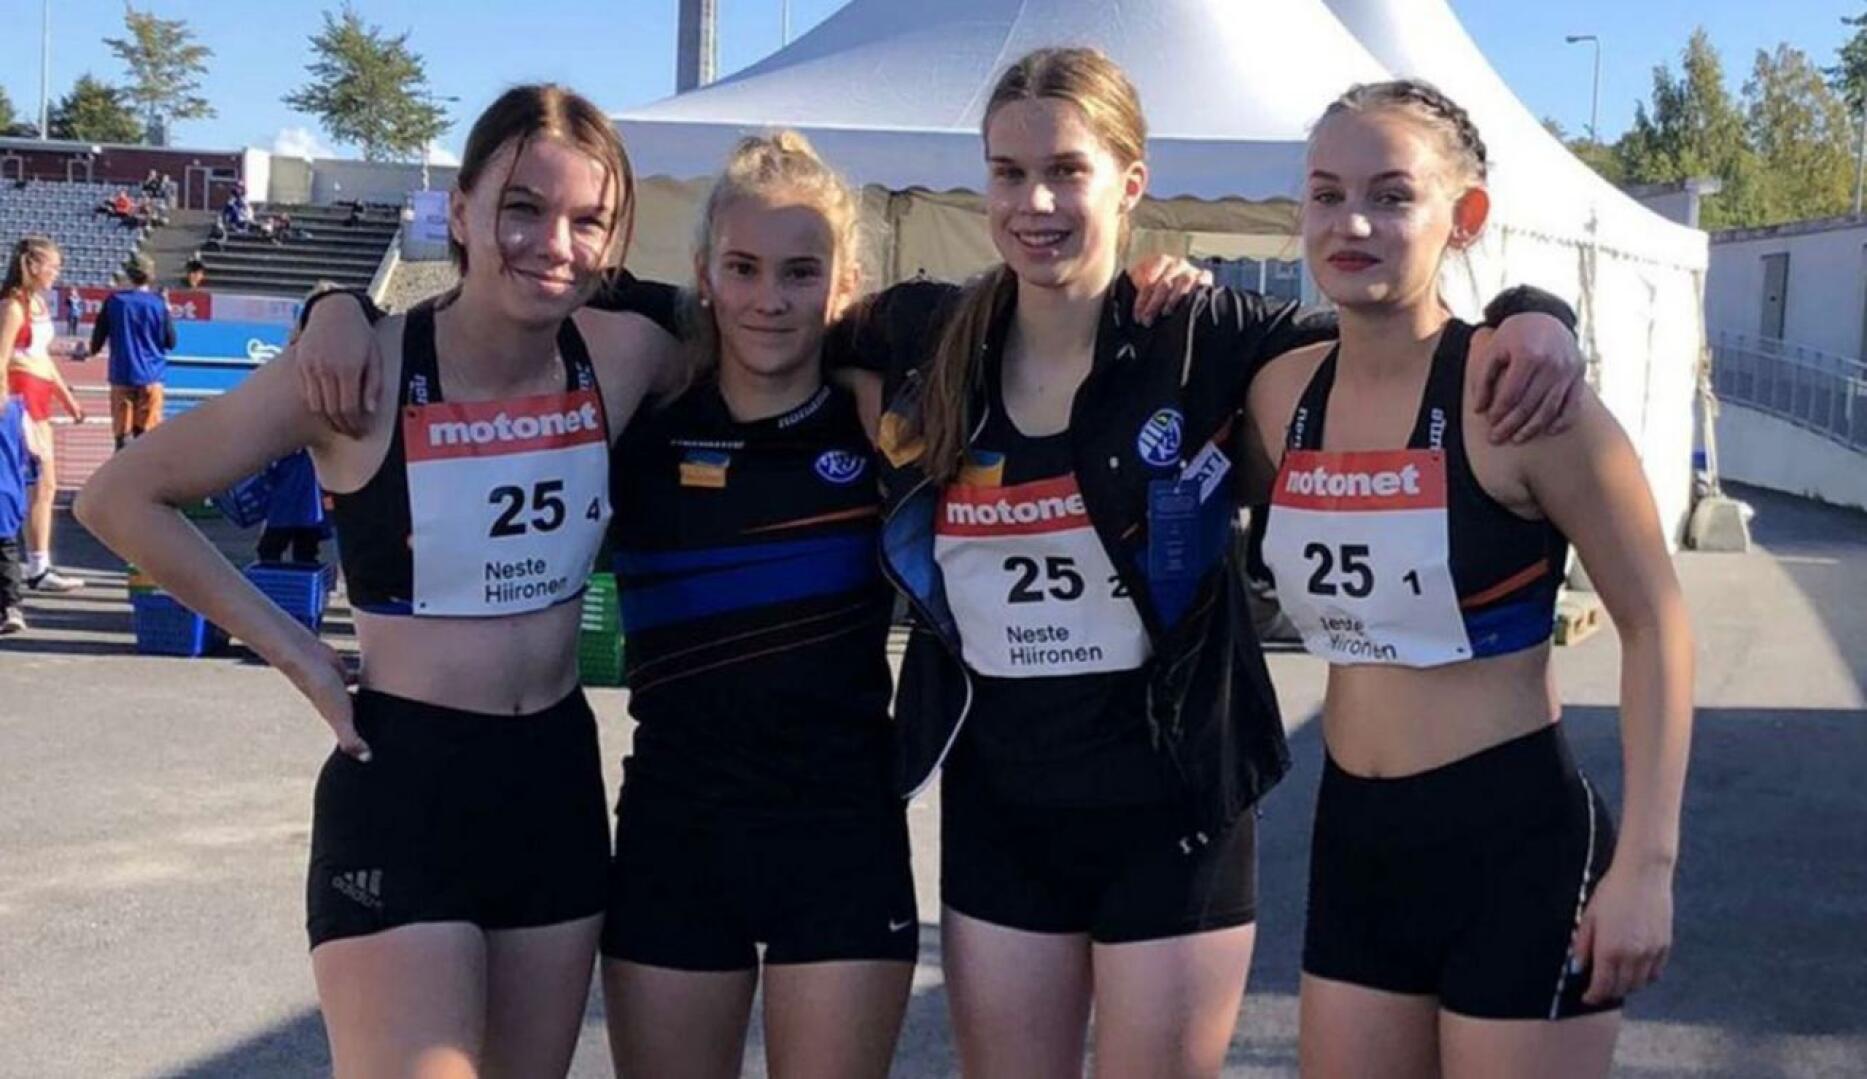 4x100 metrin joukkueessa juoksivat vasemmalta  Jenniina Tuura, Frida Isojärvi, Taija Nousiainen ja Essi Rahkola.